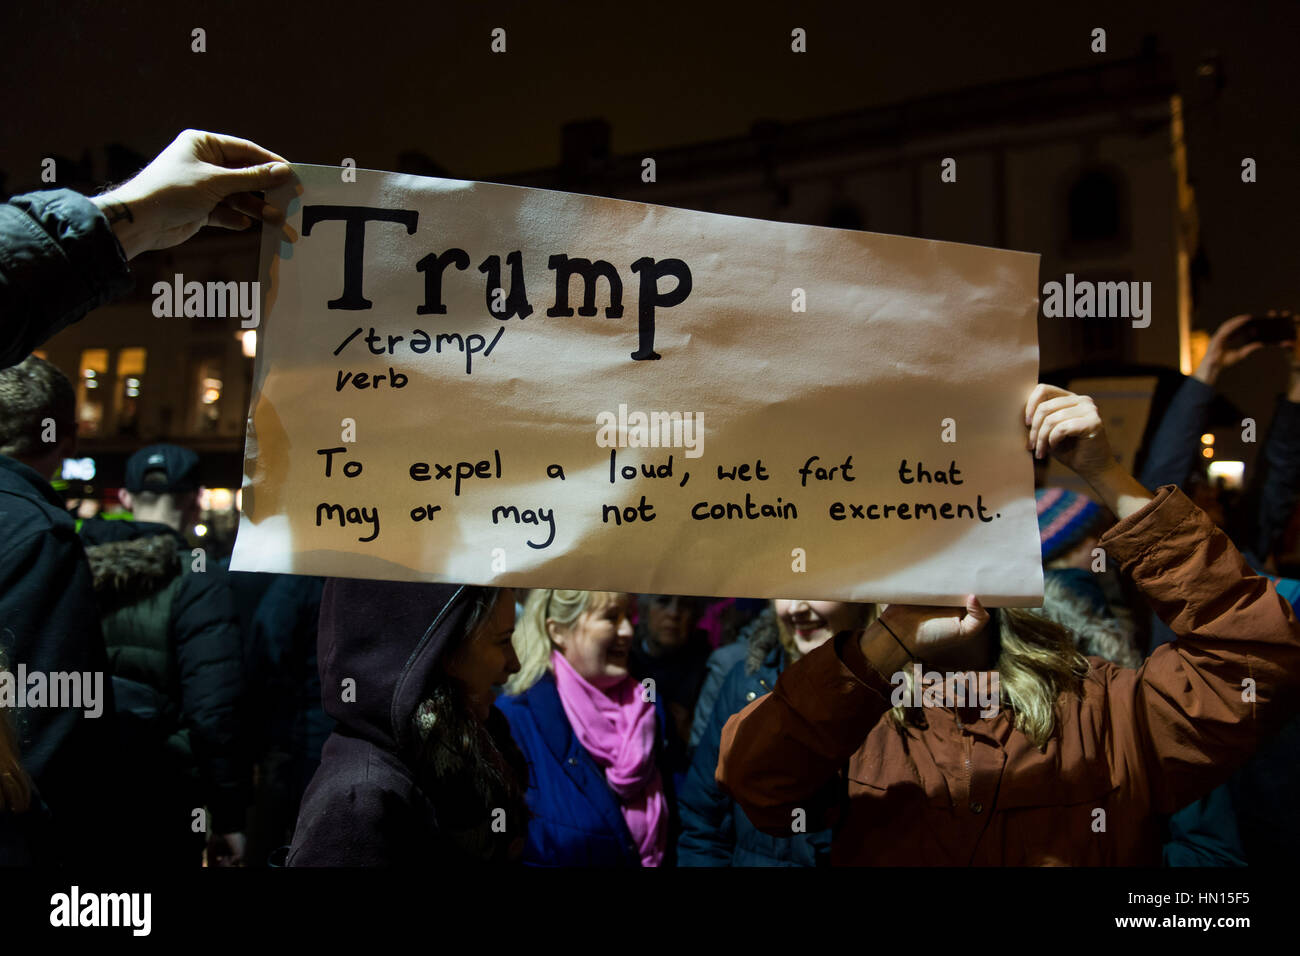 Cardiff protestieren gegen "Muslimische Verbot" Trump - ein Demonstrant hält ein Schild die Wörterbuch-Definition des Wortes "Trumpf" zeigt Stockfoto